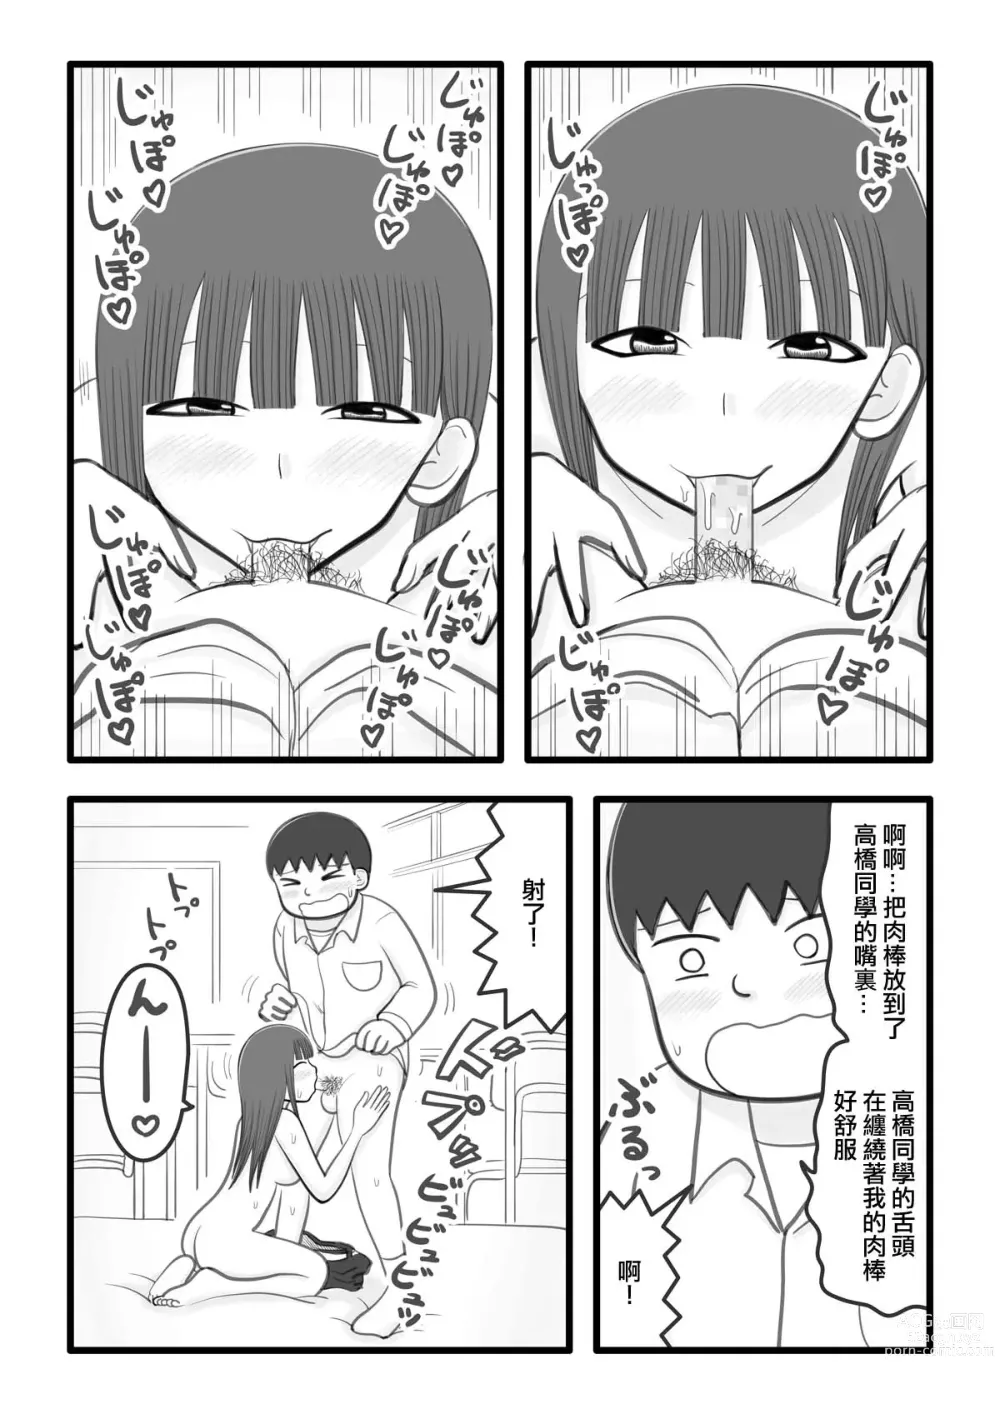 Page 6 of doujinshi 我喜歡的女孩子是肉棒清潔負責人